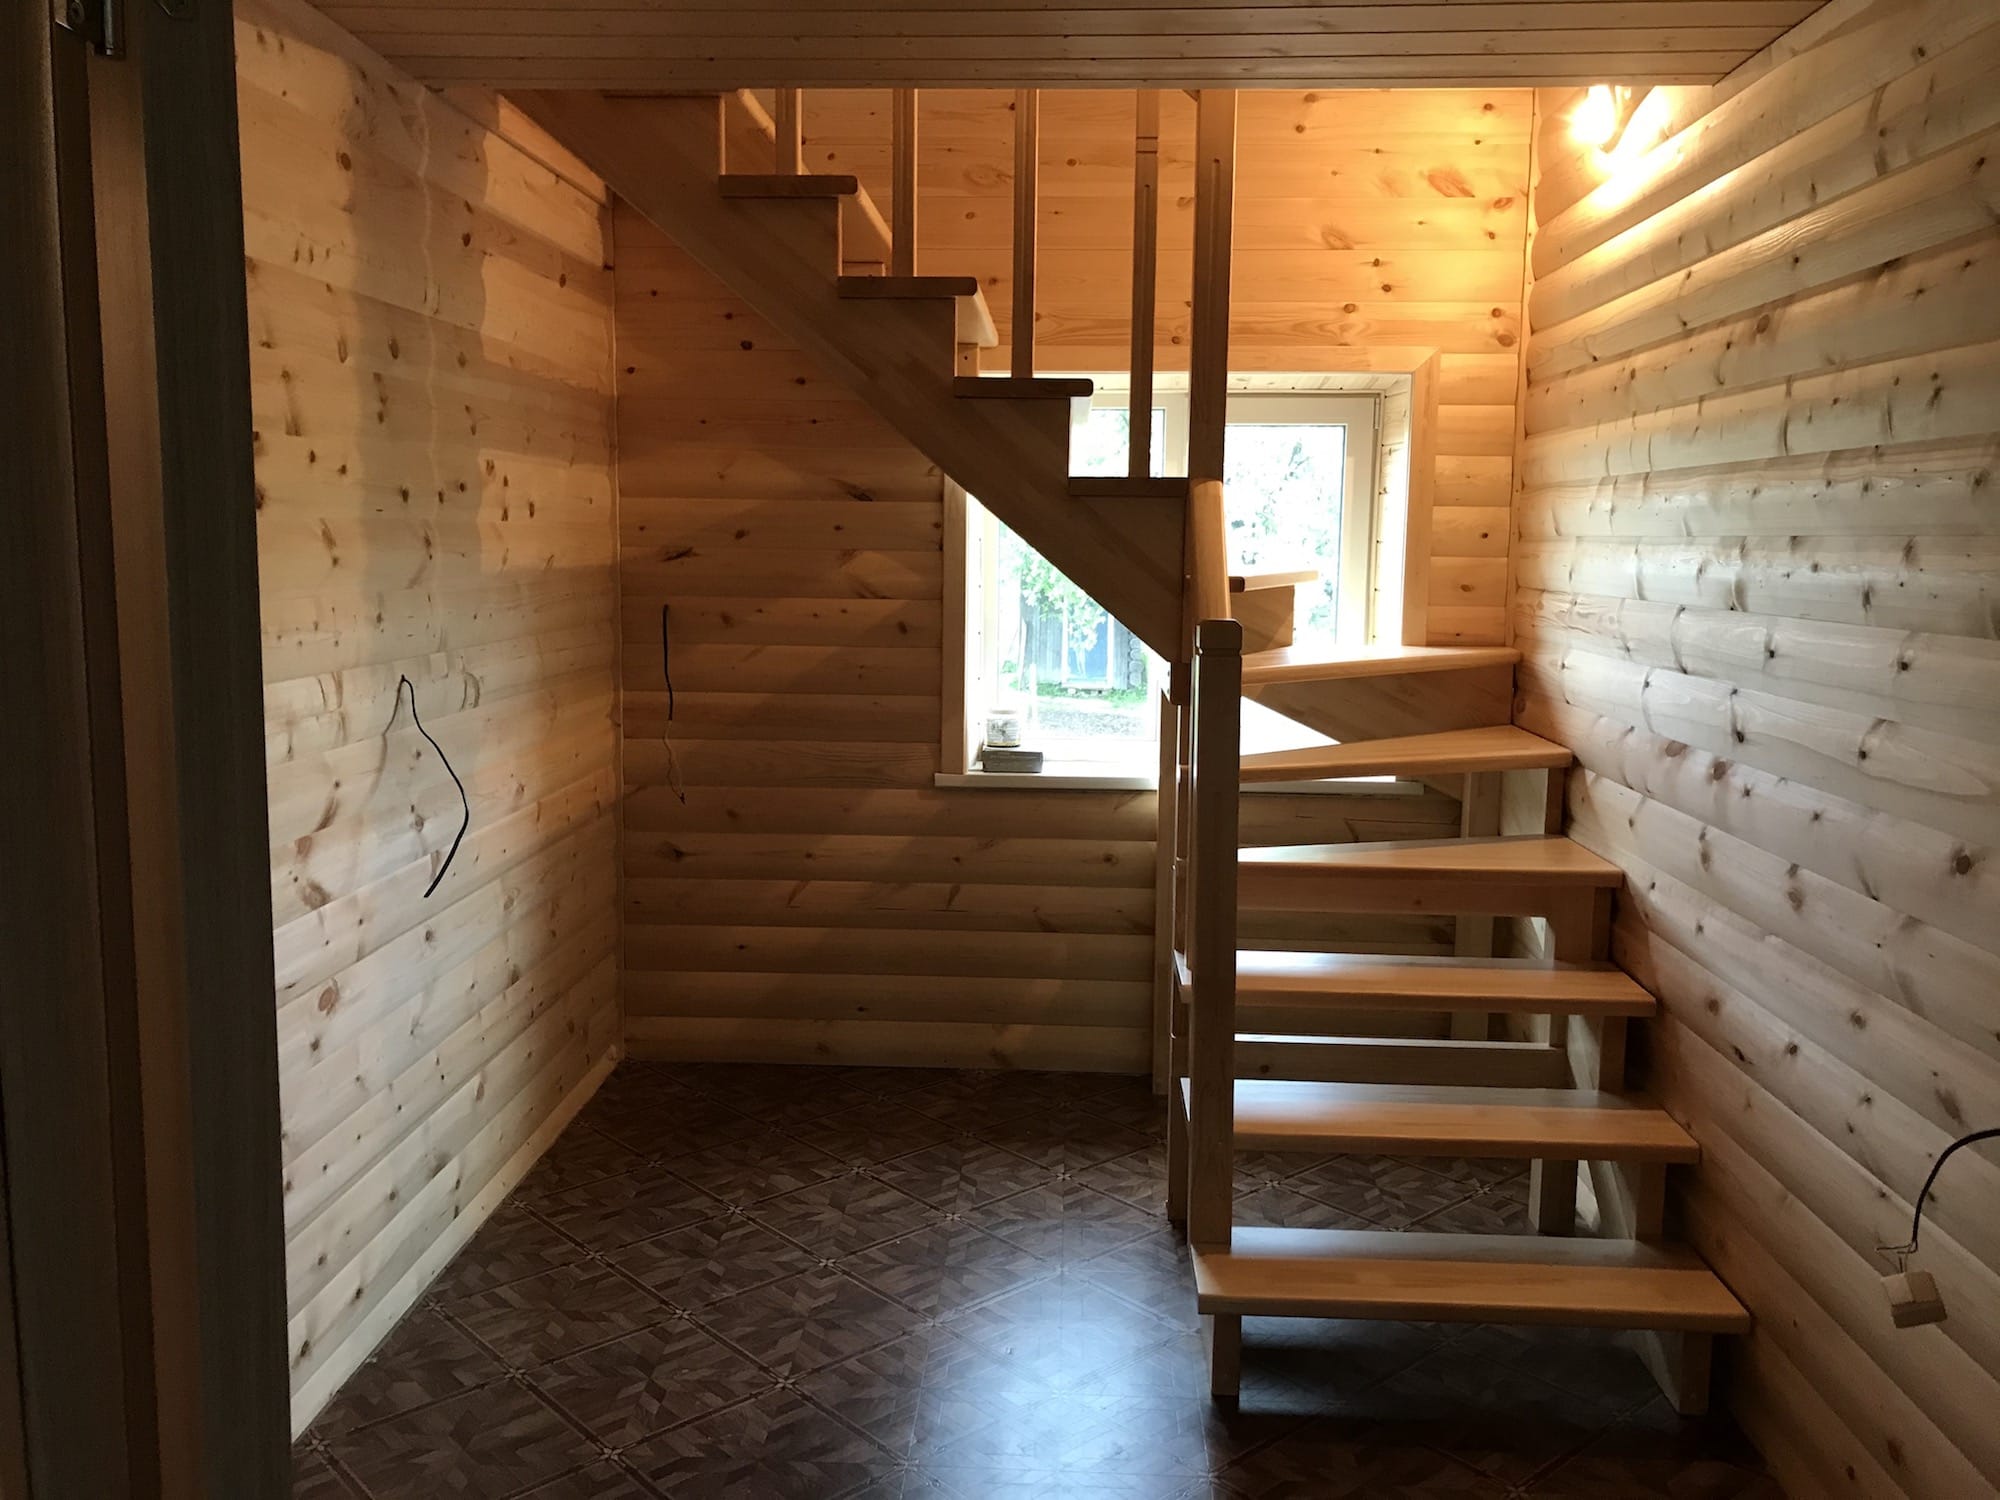 Фото Г - образная деревянная лестница с 4-мя  поворотными ступенями на 90 градусов..